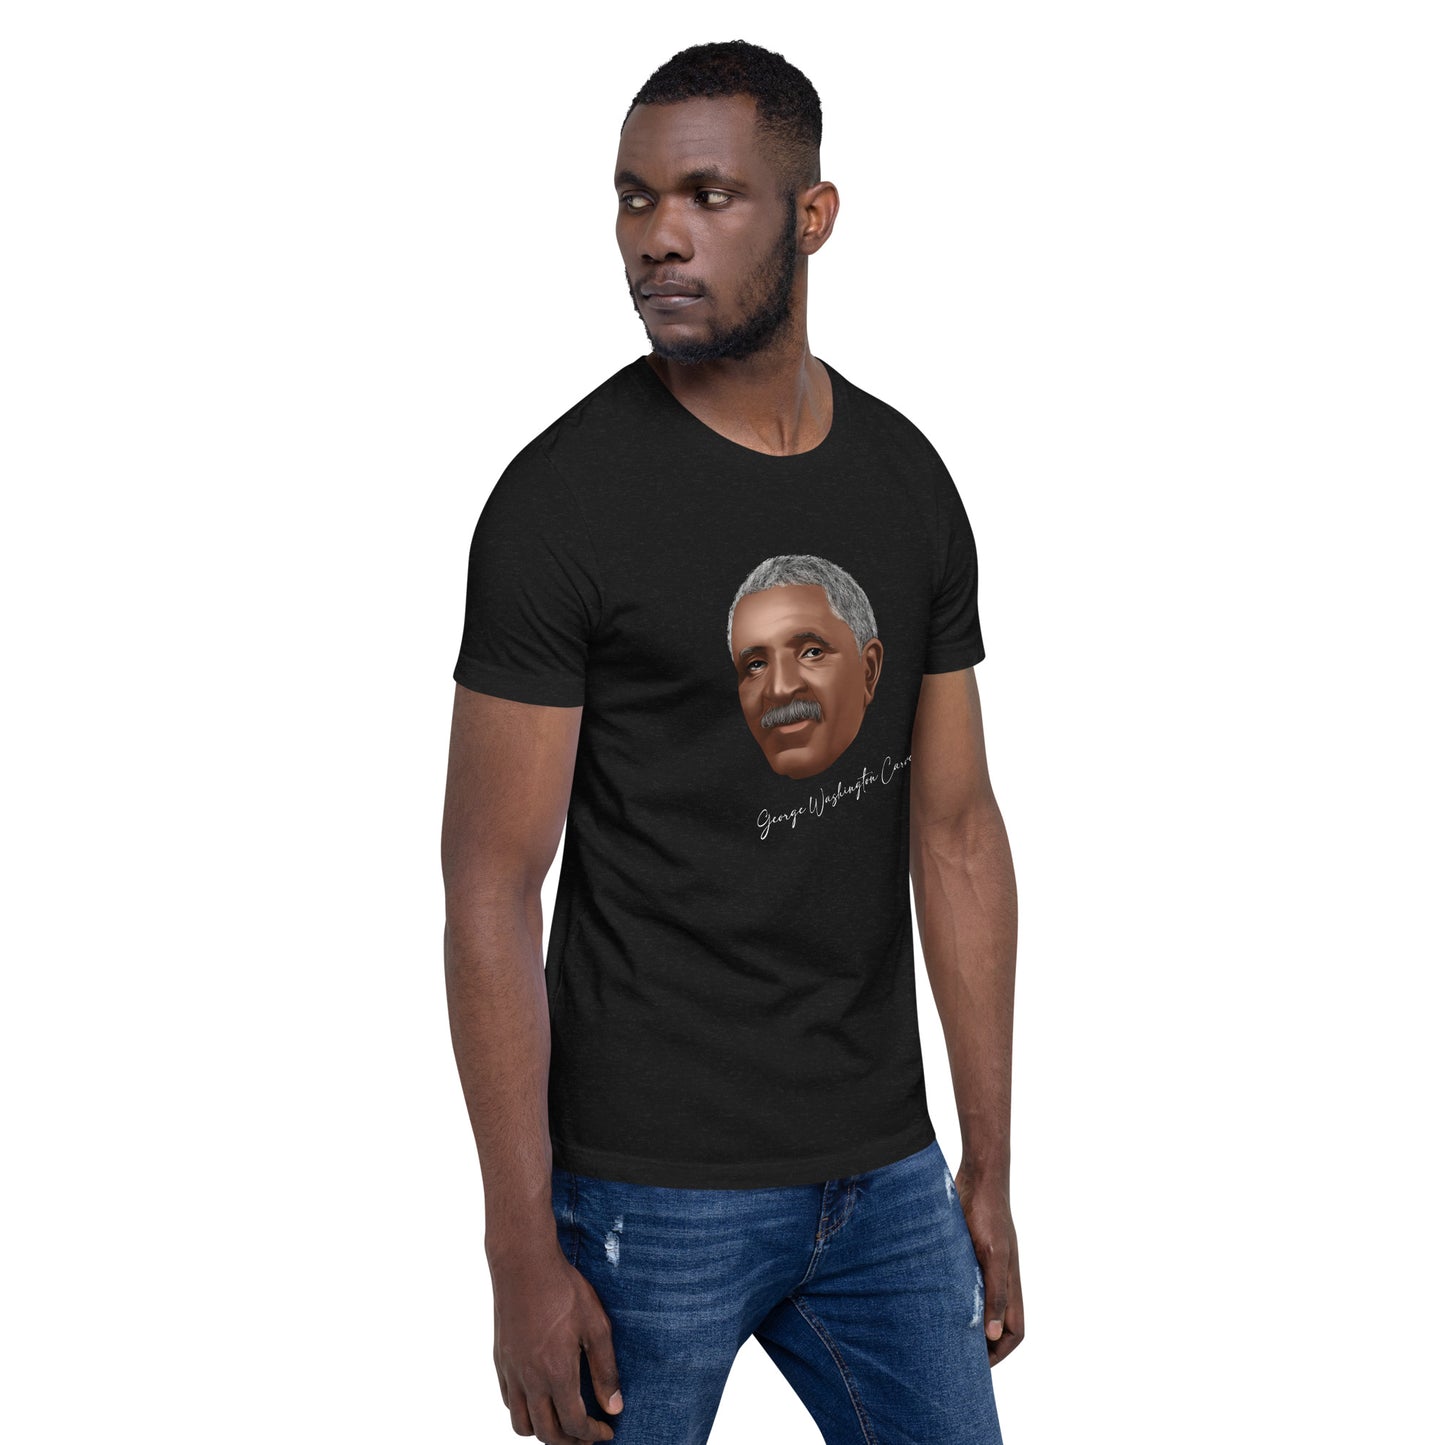 George Washington Carver Unisex t-shirt